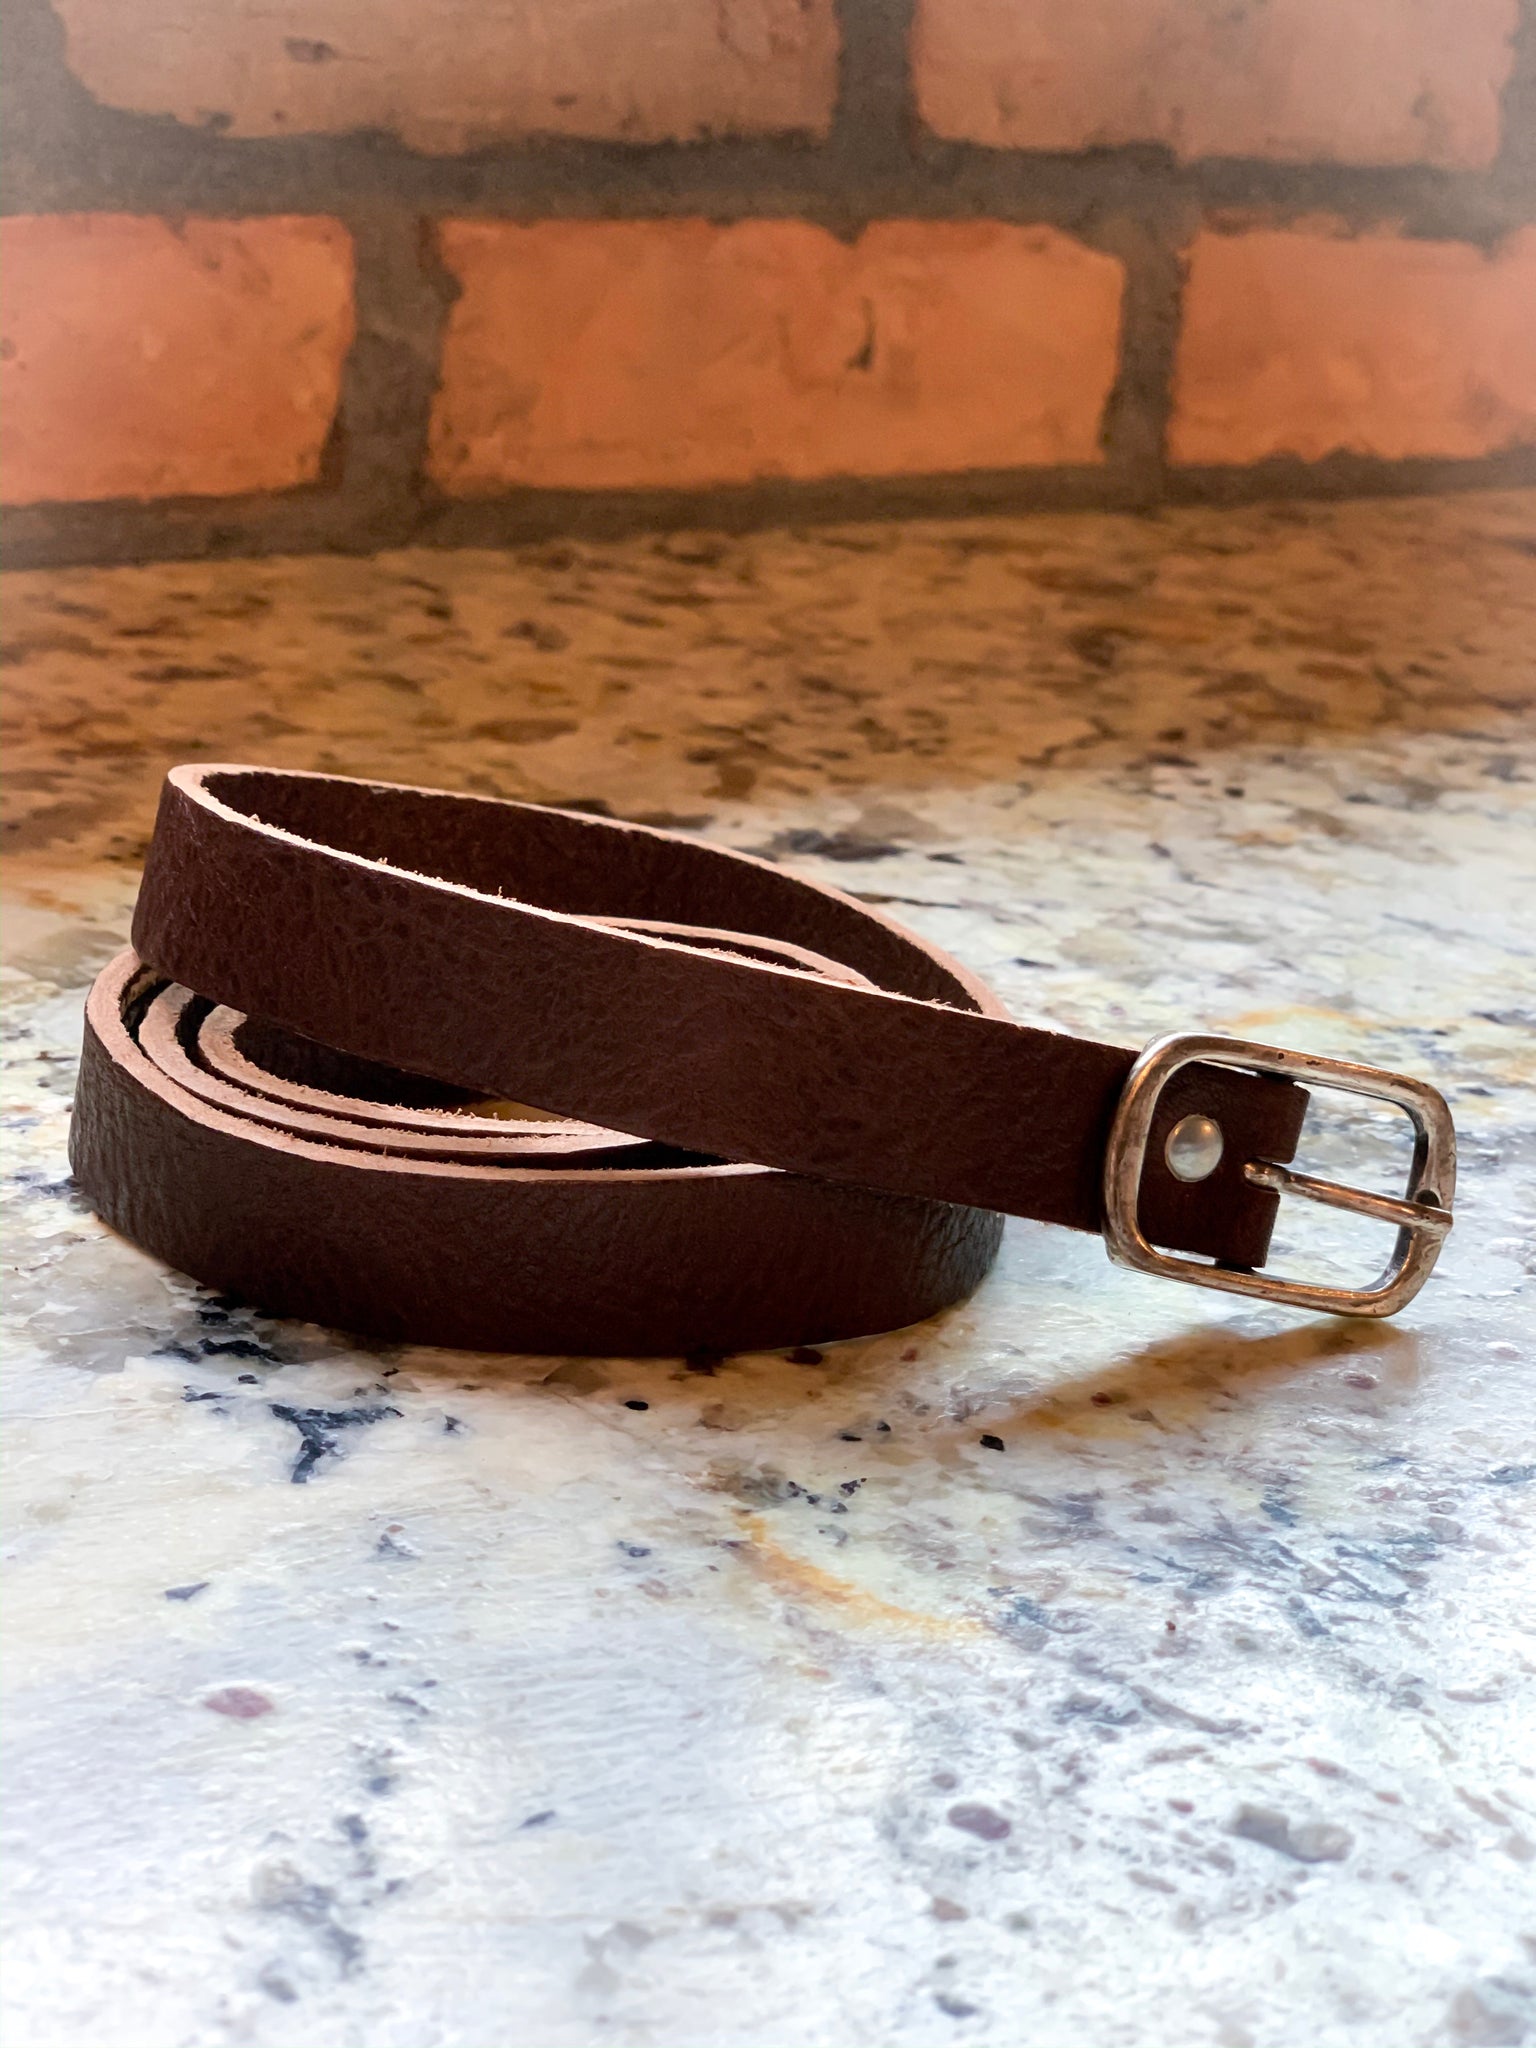 CowboysBelt Textured Leather Belt